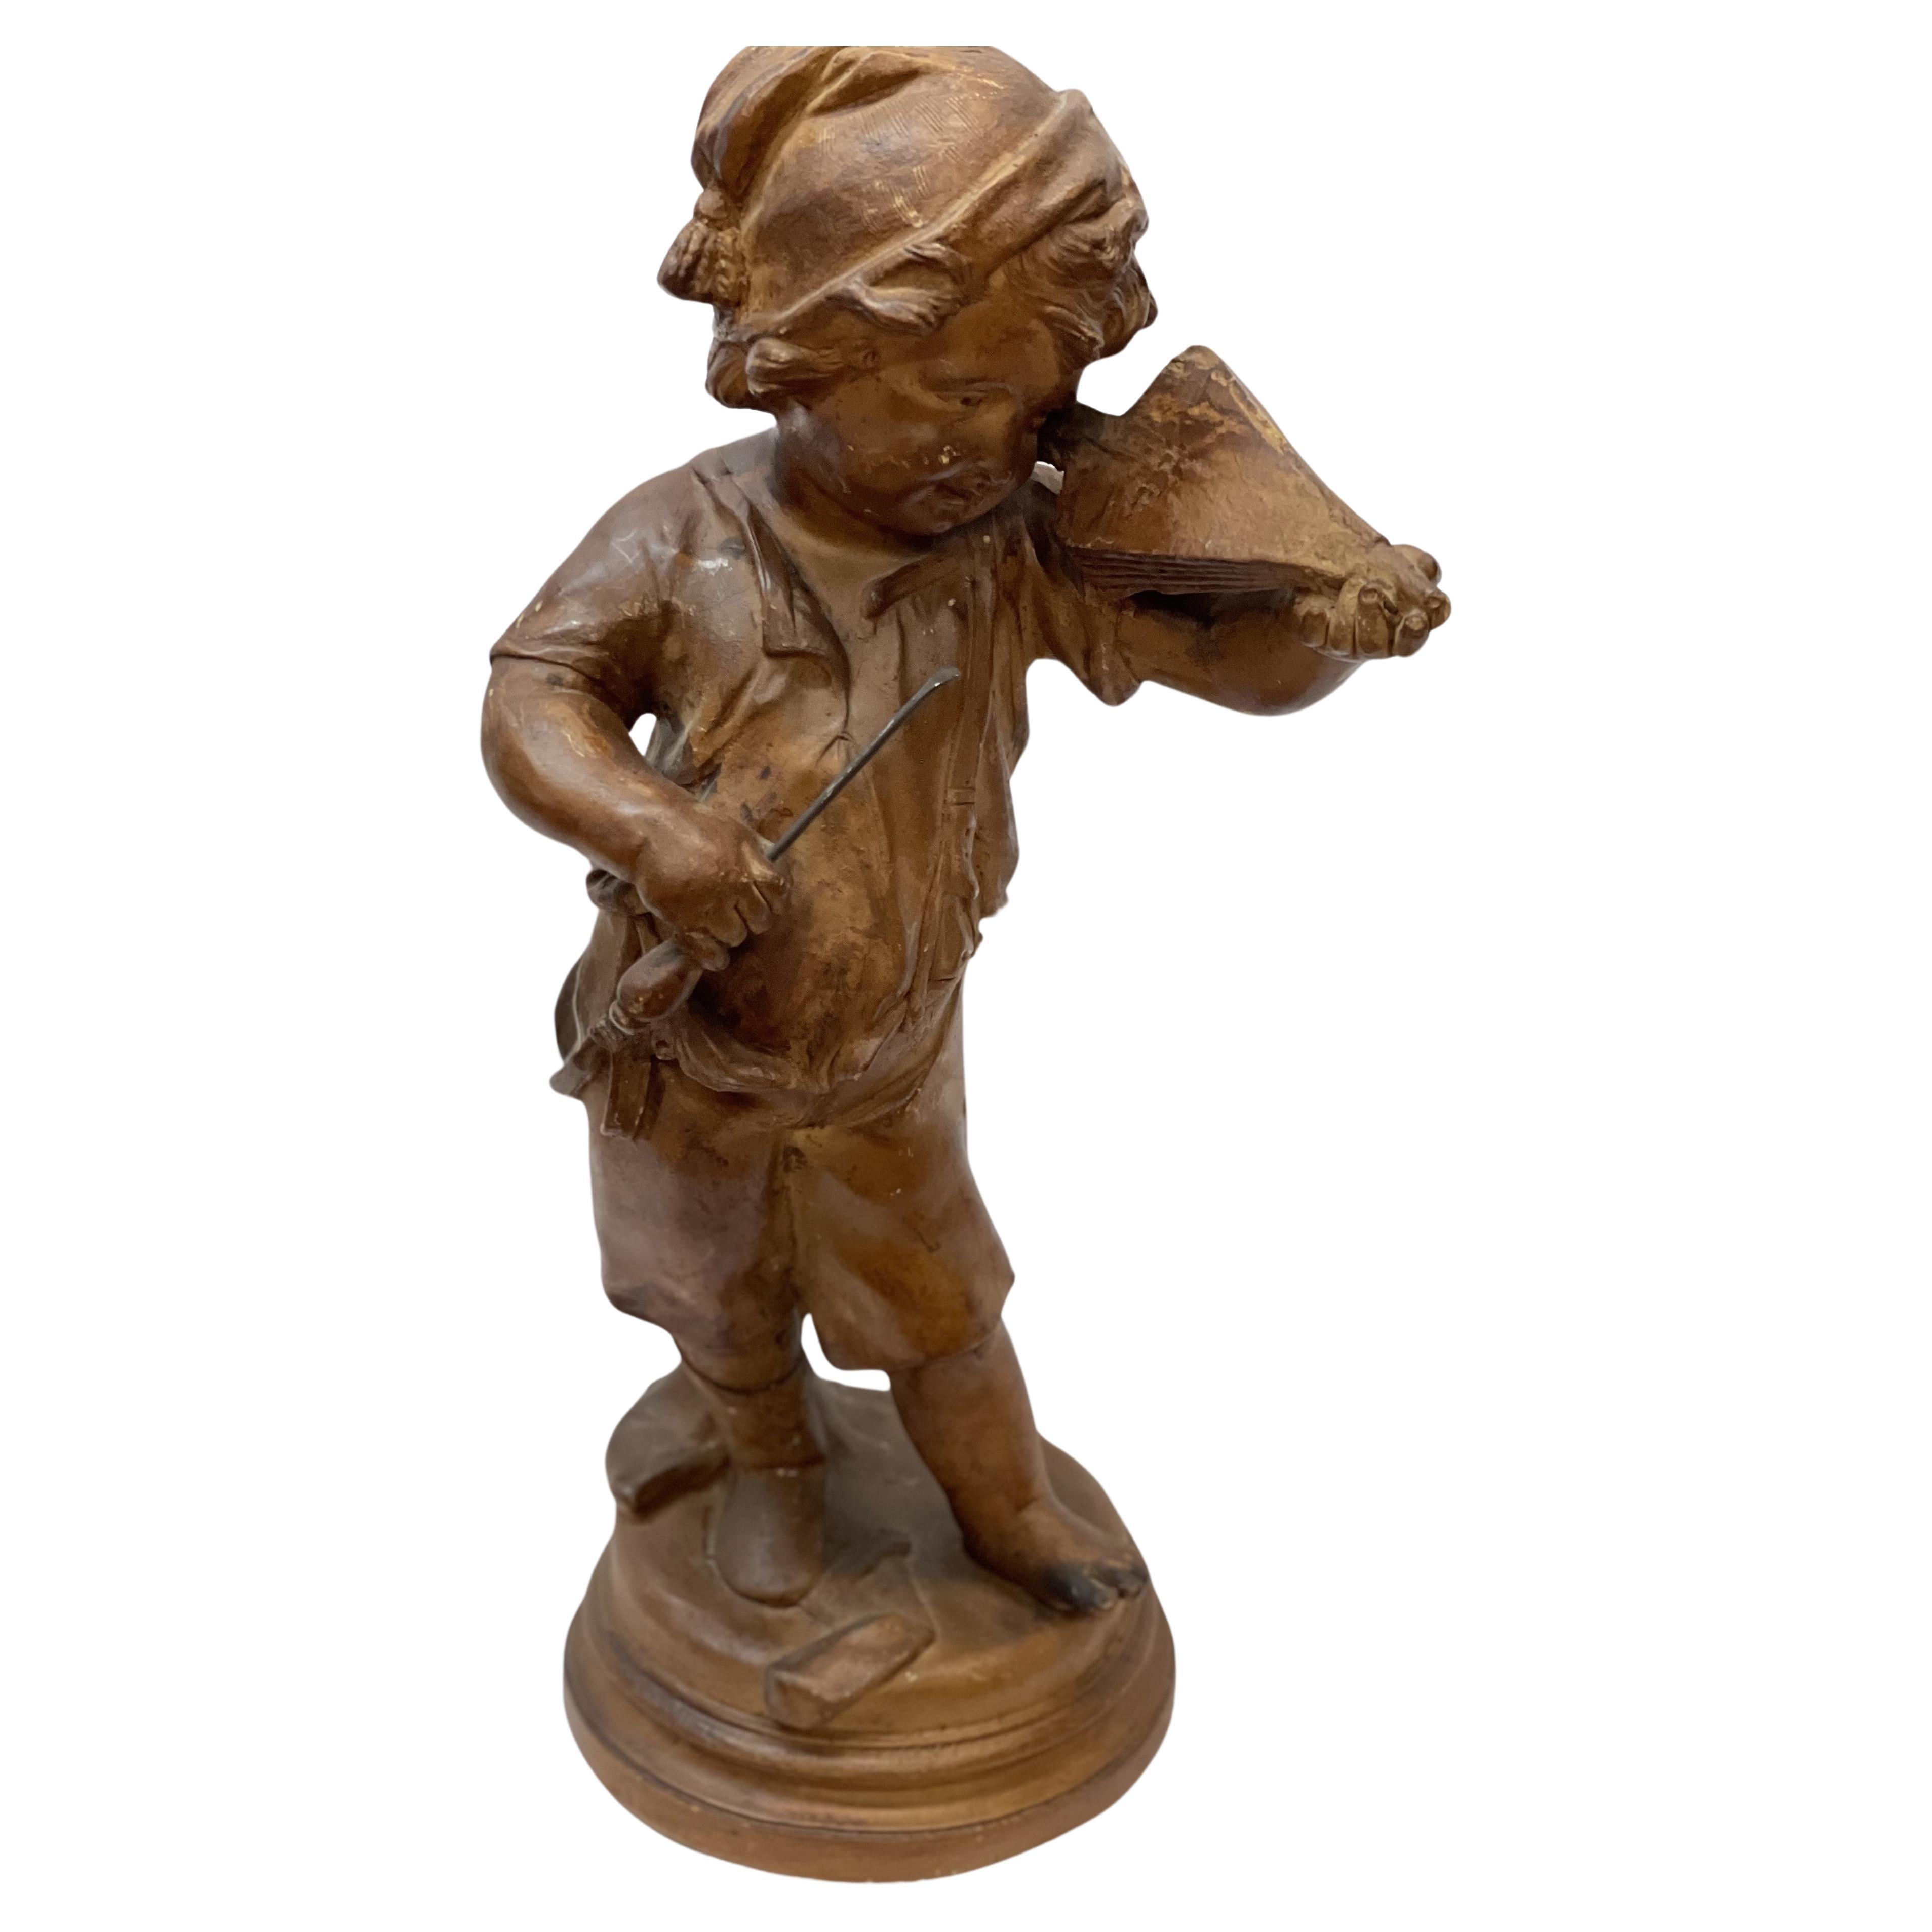 Figurine du 19e siècle représentant un jeune garçon avec un instrument de musique en terre cuite